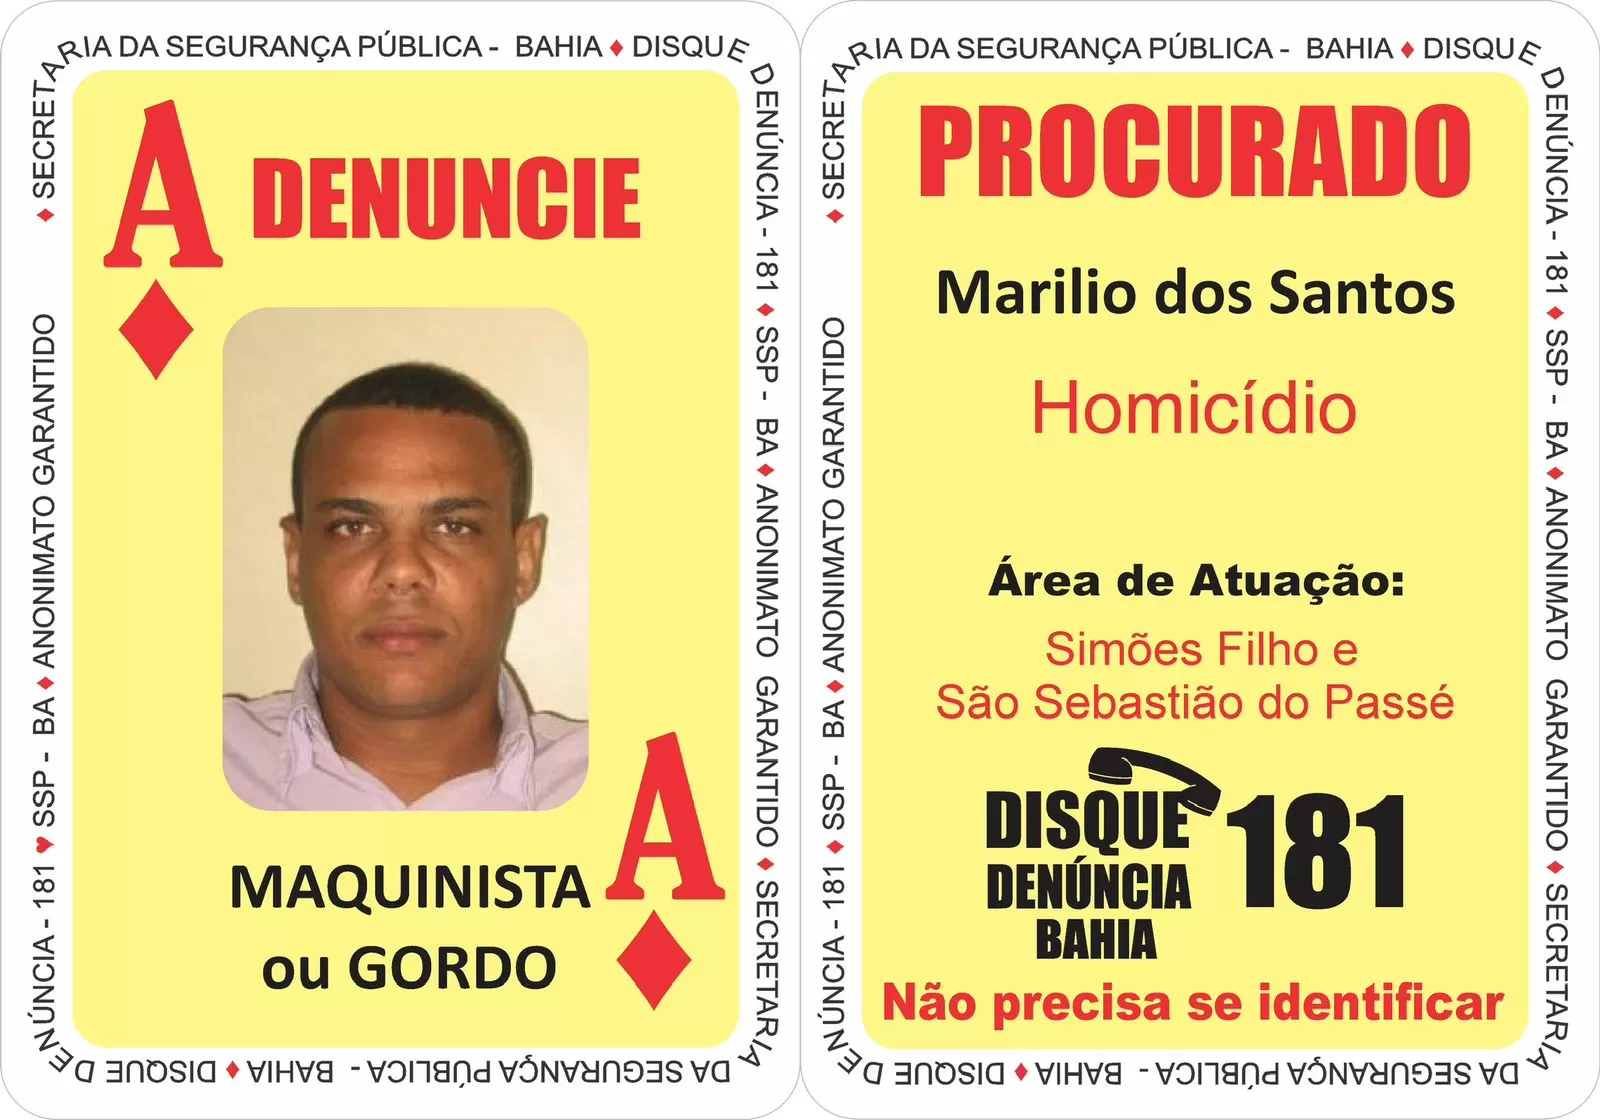 Marilio dos Santos, o “Maquinista” ou “Gordo”. Foto: divulgação SSP